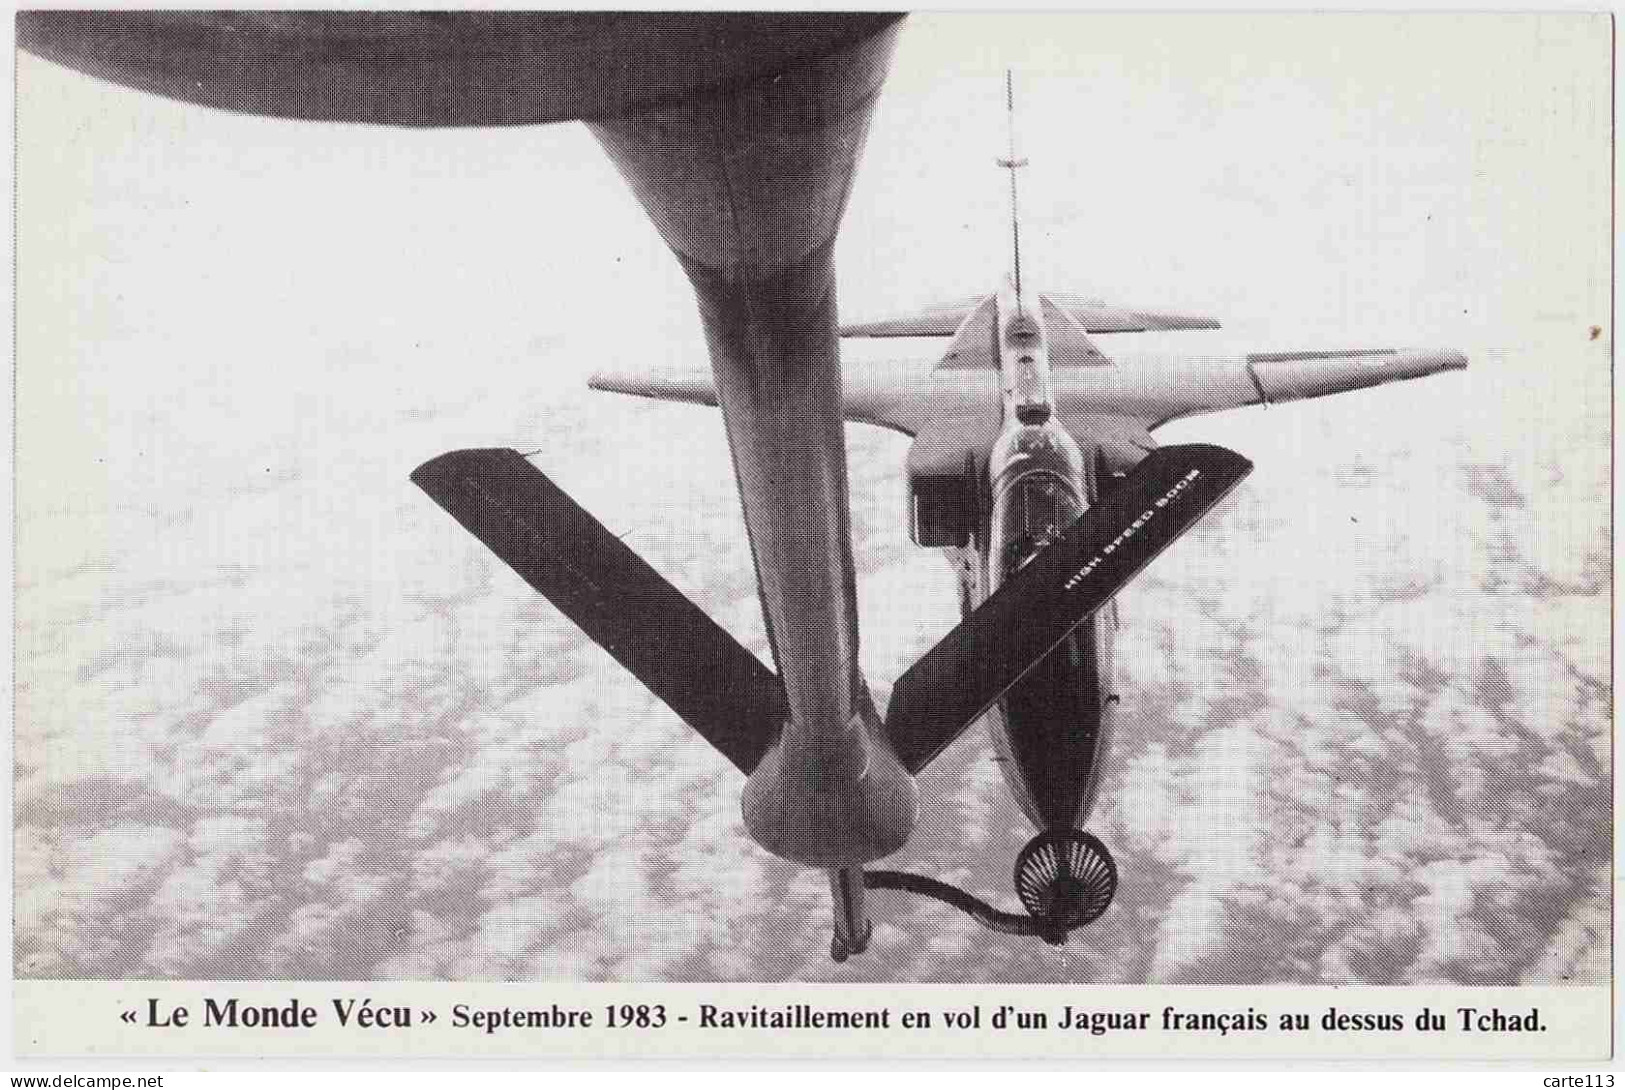 0 - F21785CPM - LE MONDE VECU - Serie H 72/0488 - Septembre 1983 - Tchad - Ravitaillement D'un Jaguar Francais - Avion, - Andere Kriege